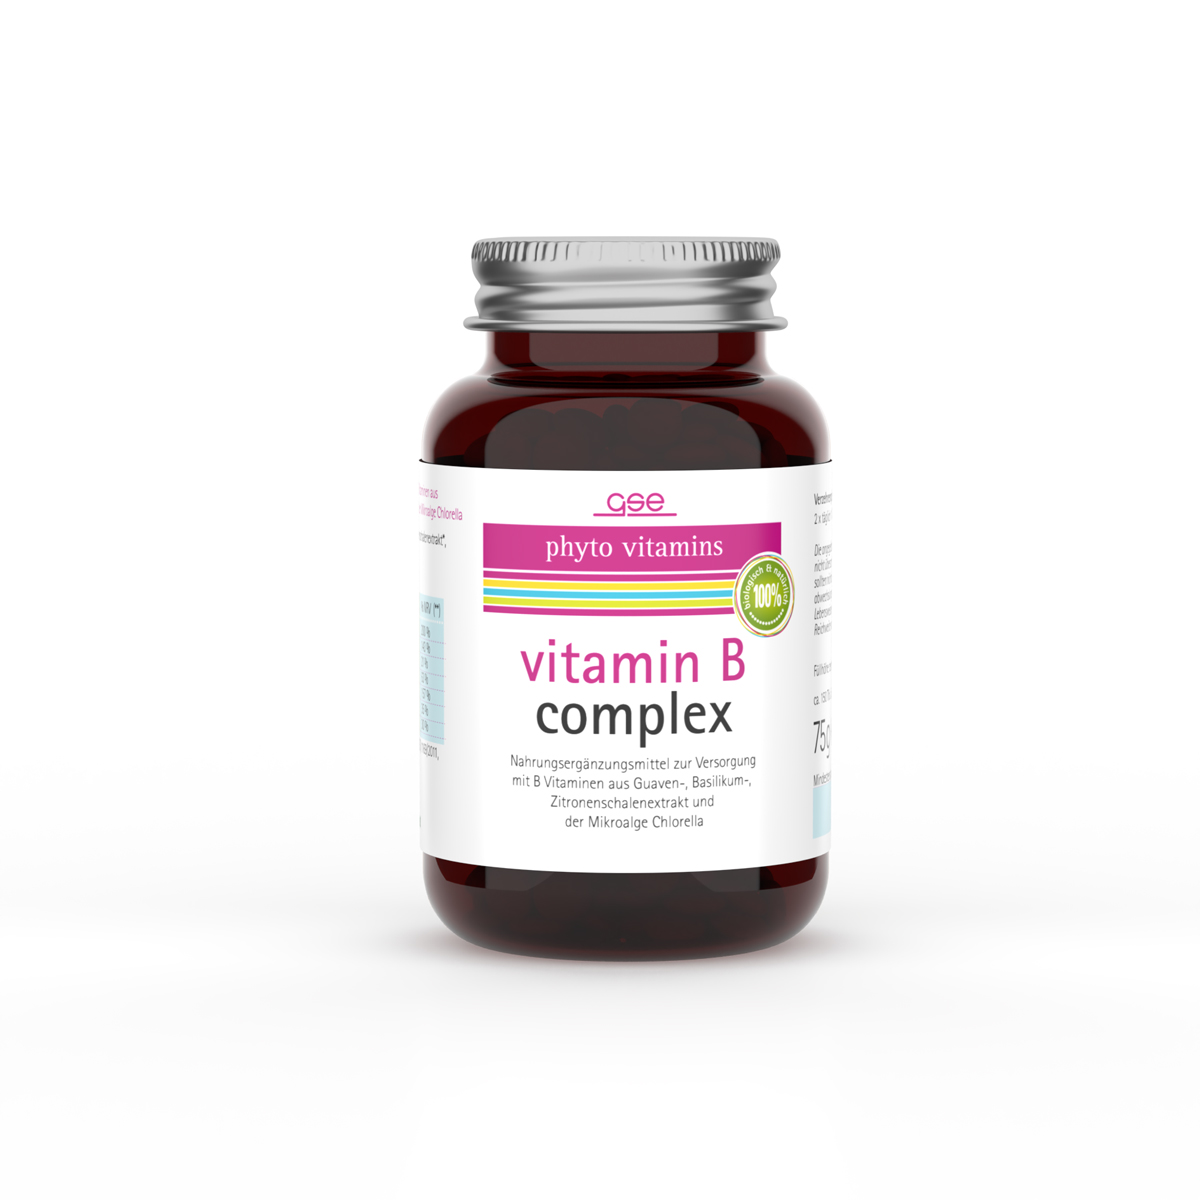 Vitamin B Complex (Bio)